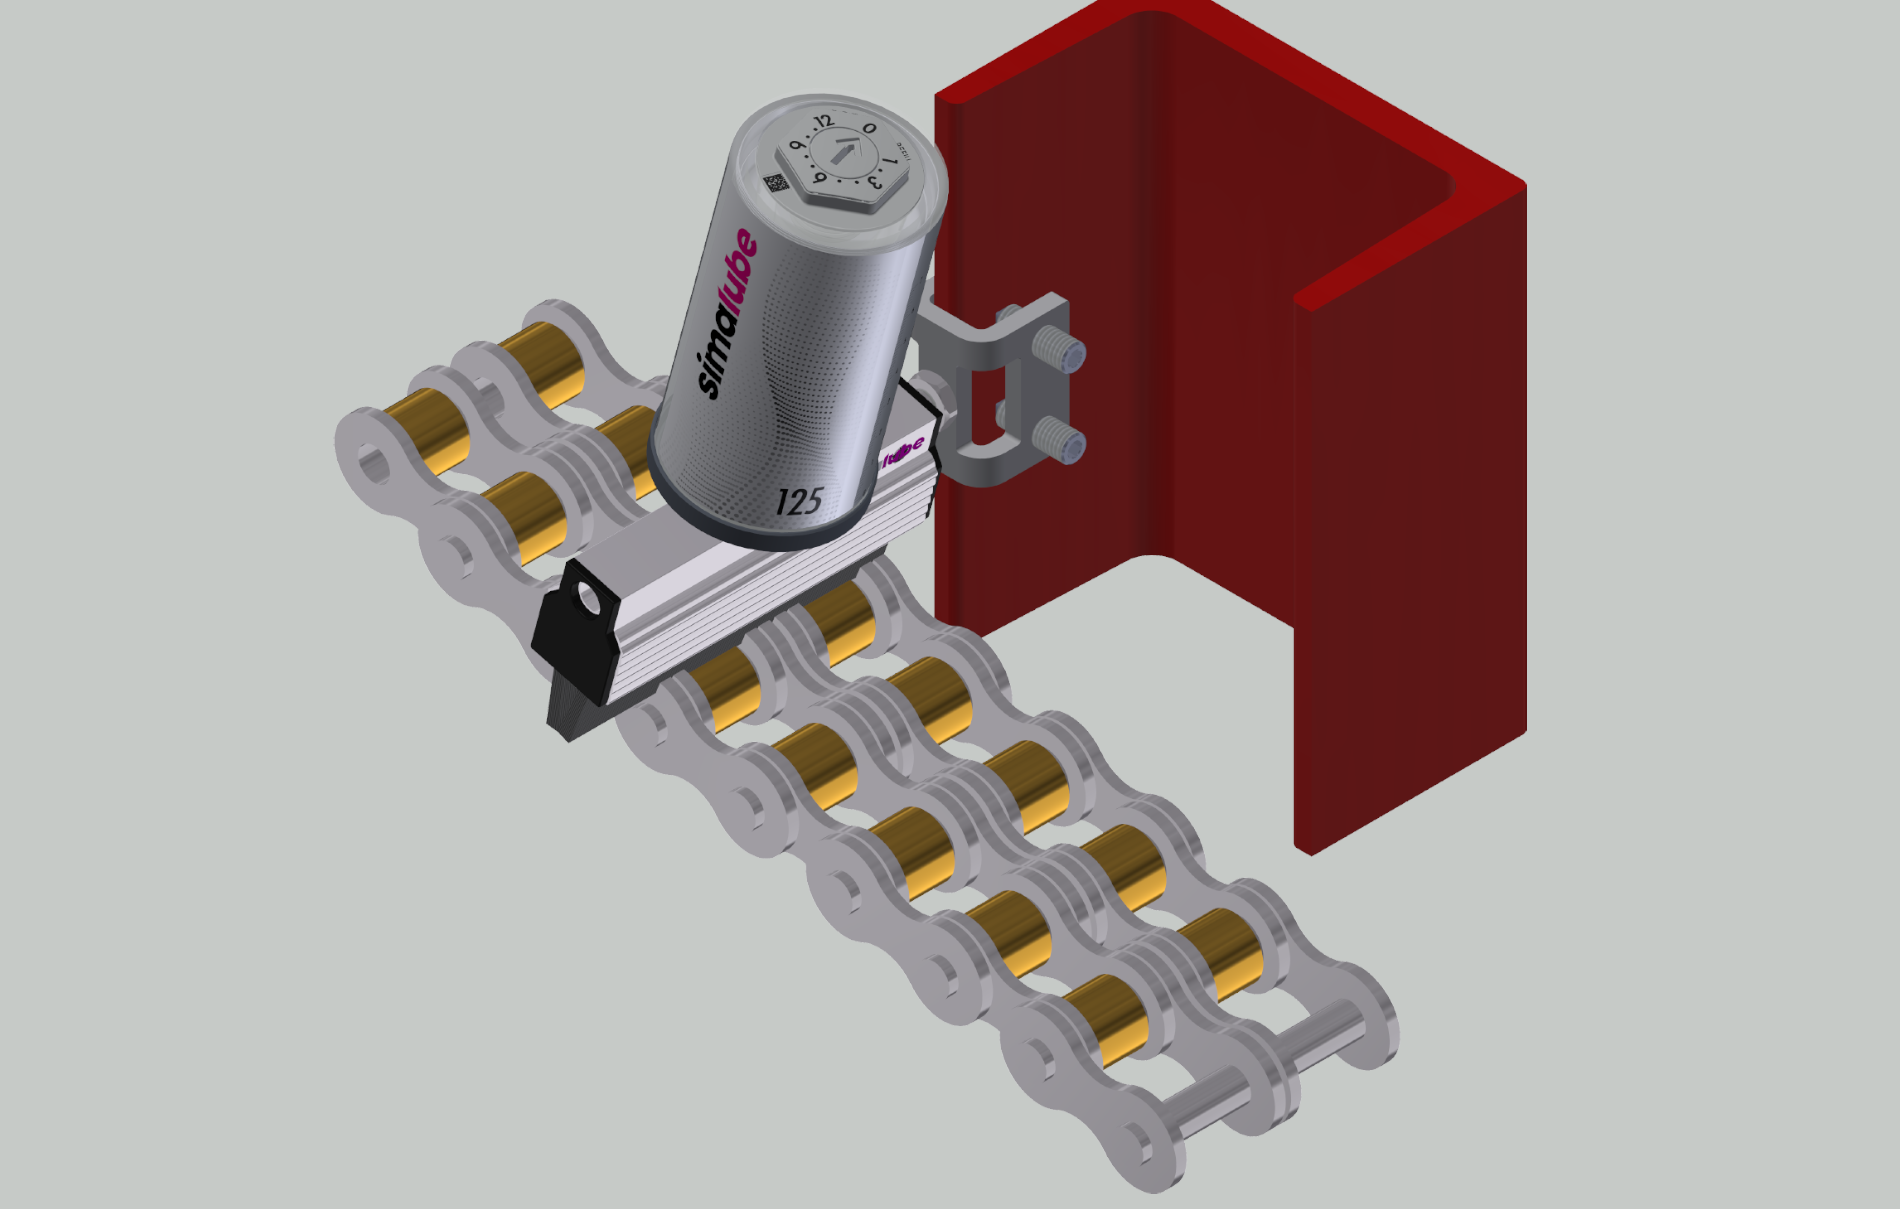 Vista del modelo: el lubricador simalube incl. cepillo lubrica y limpia simultáneamente la cadena de transmisión de una escalera mecánica de forma automática y constante durante un máximo de un año.